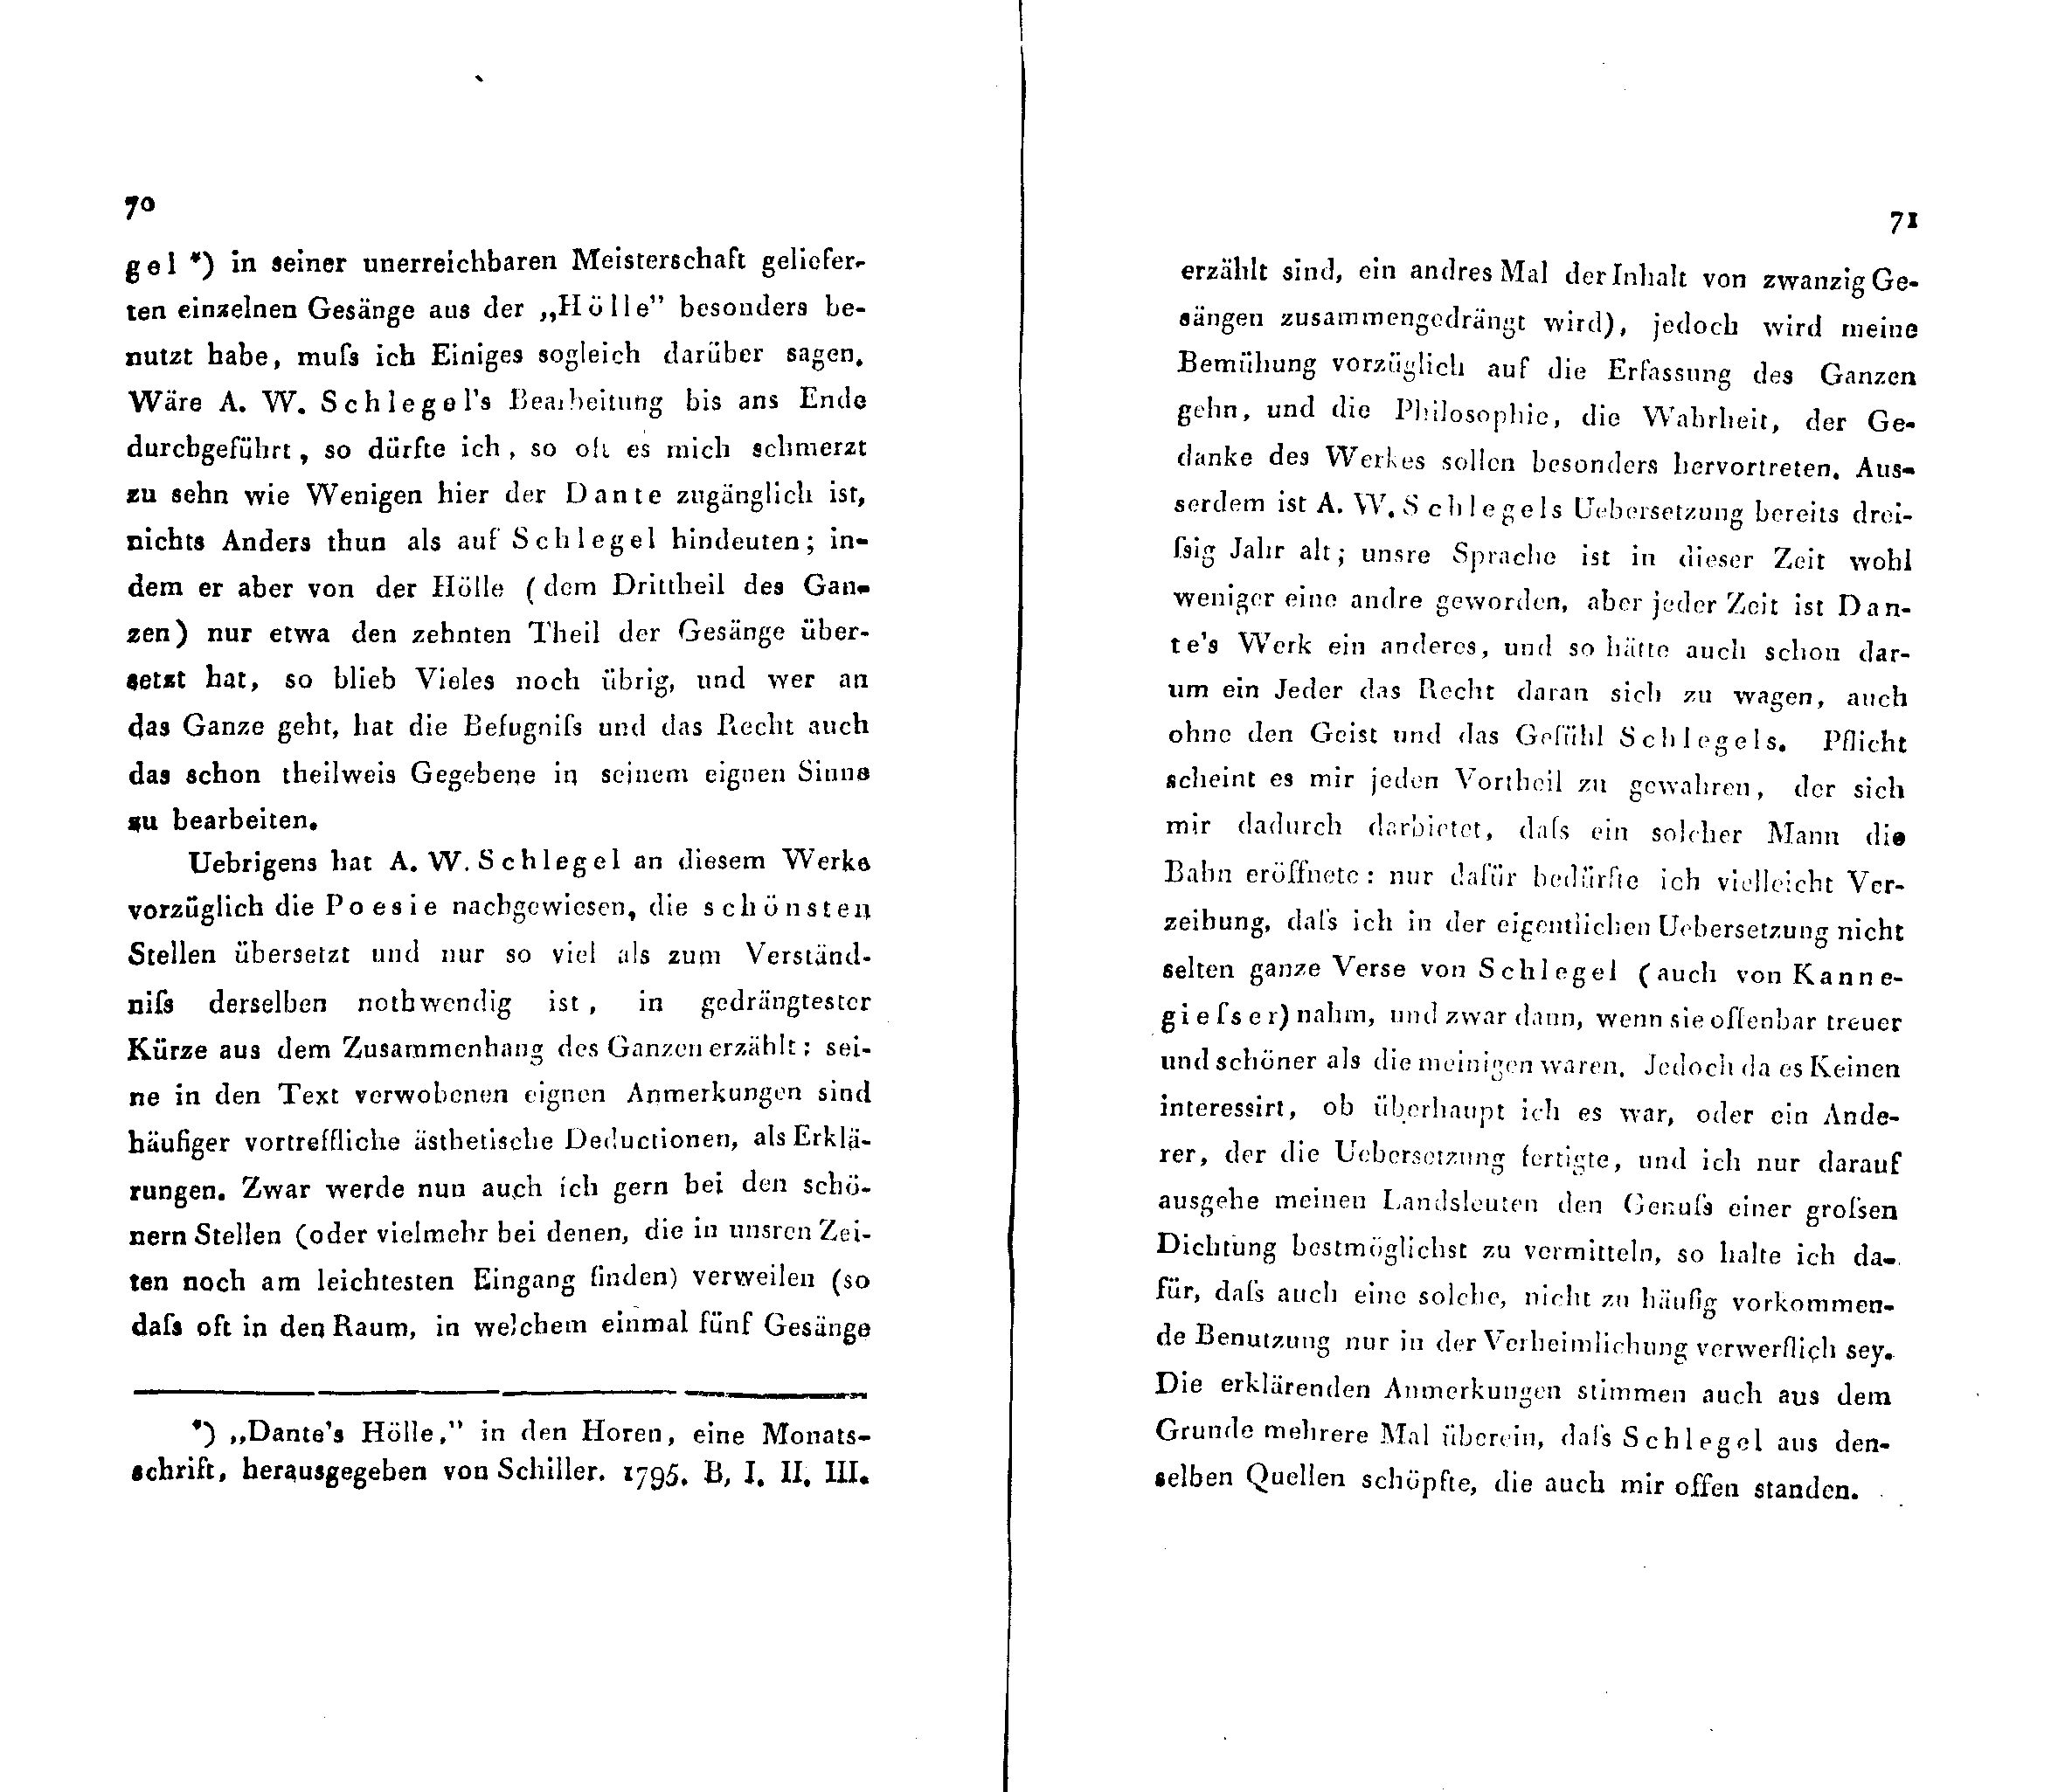 Ueber Dante Alighieri, seine Zeit und seine Divina Comedia [1] (1824) | 3. (70-71) Main body of text